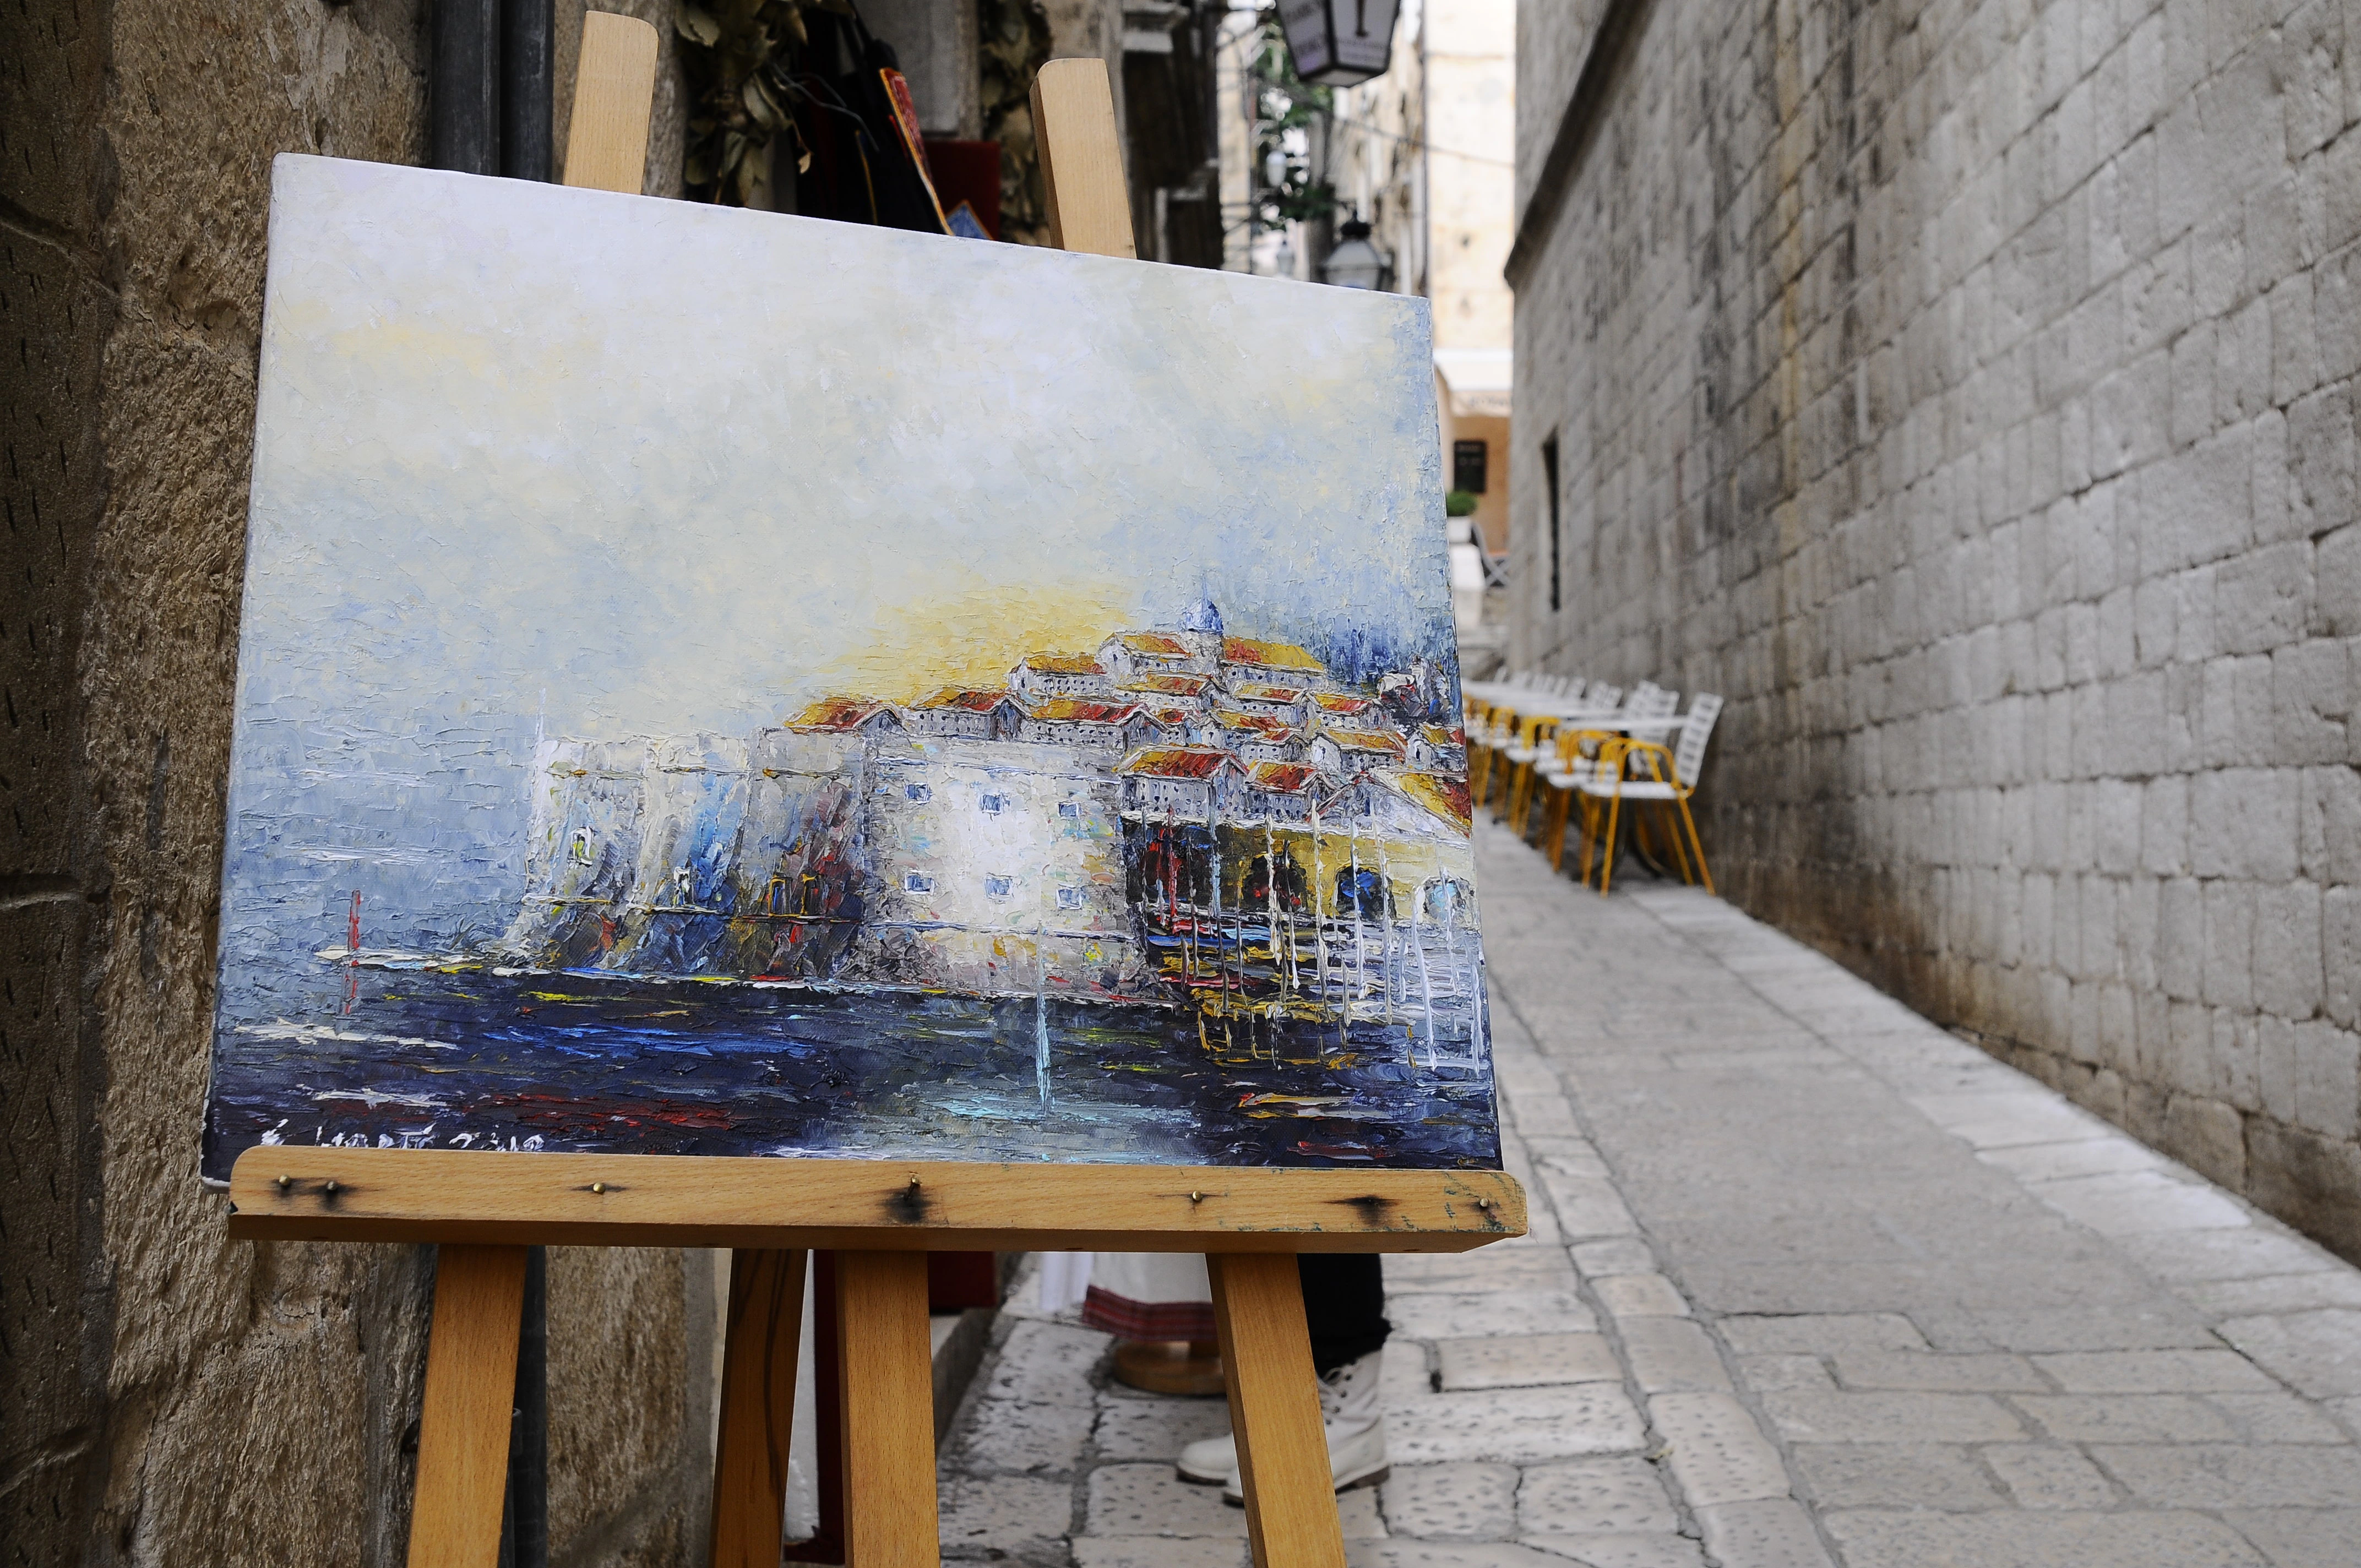 Pintura de la vista de la ciudad amurallada de Dubrovnik en una de sus calles.